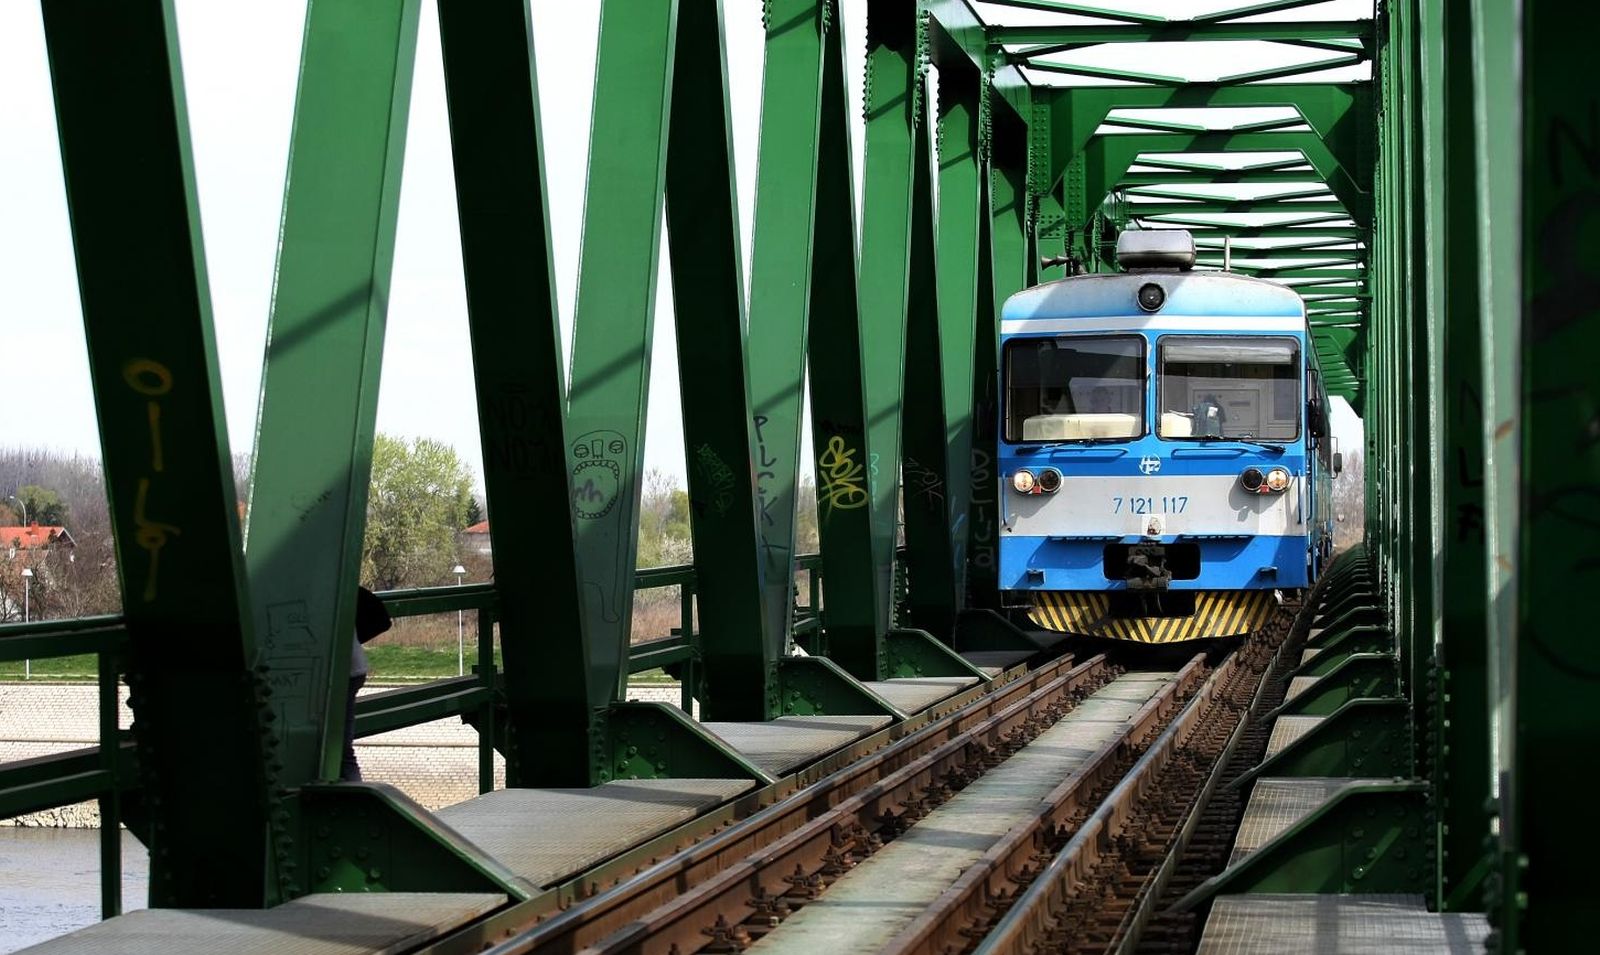 28.03.2012., Osijek - Veliki broj osjecana koristi zeljeznicki most za prelazak preko rijeke Drave. Putnici na izlasku iz vlaka. 
Photo: Davor Javorovic/PIXSELL